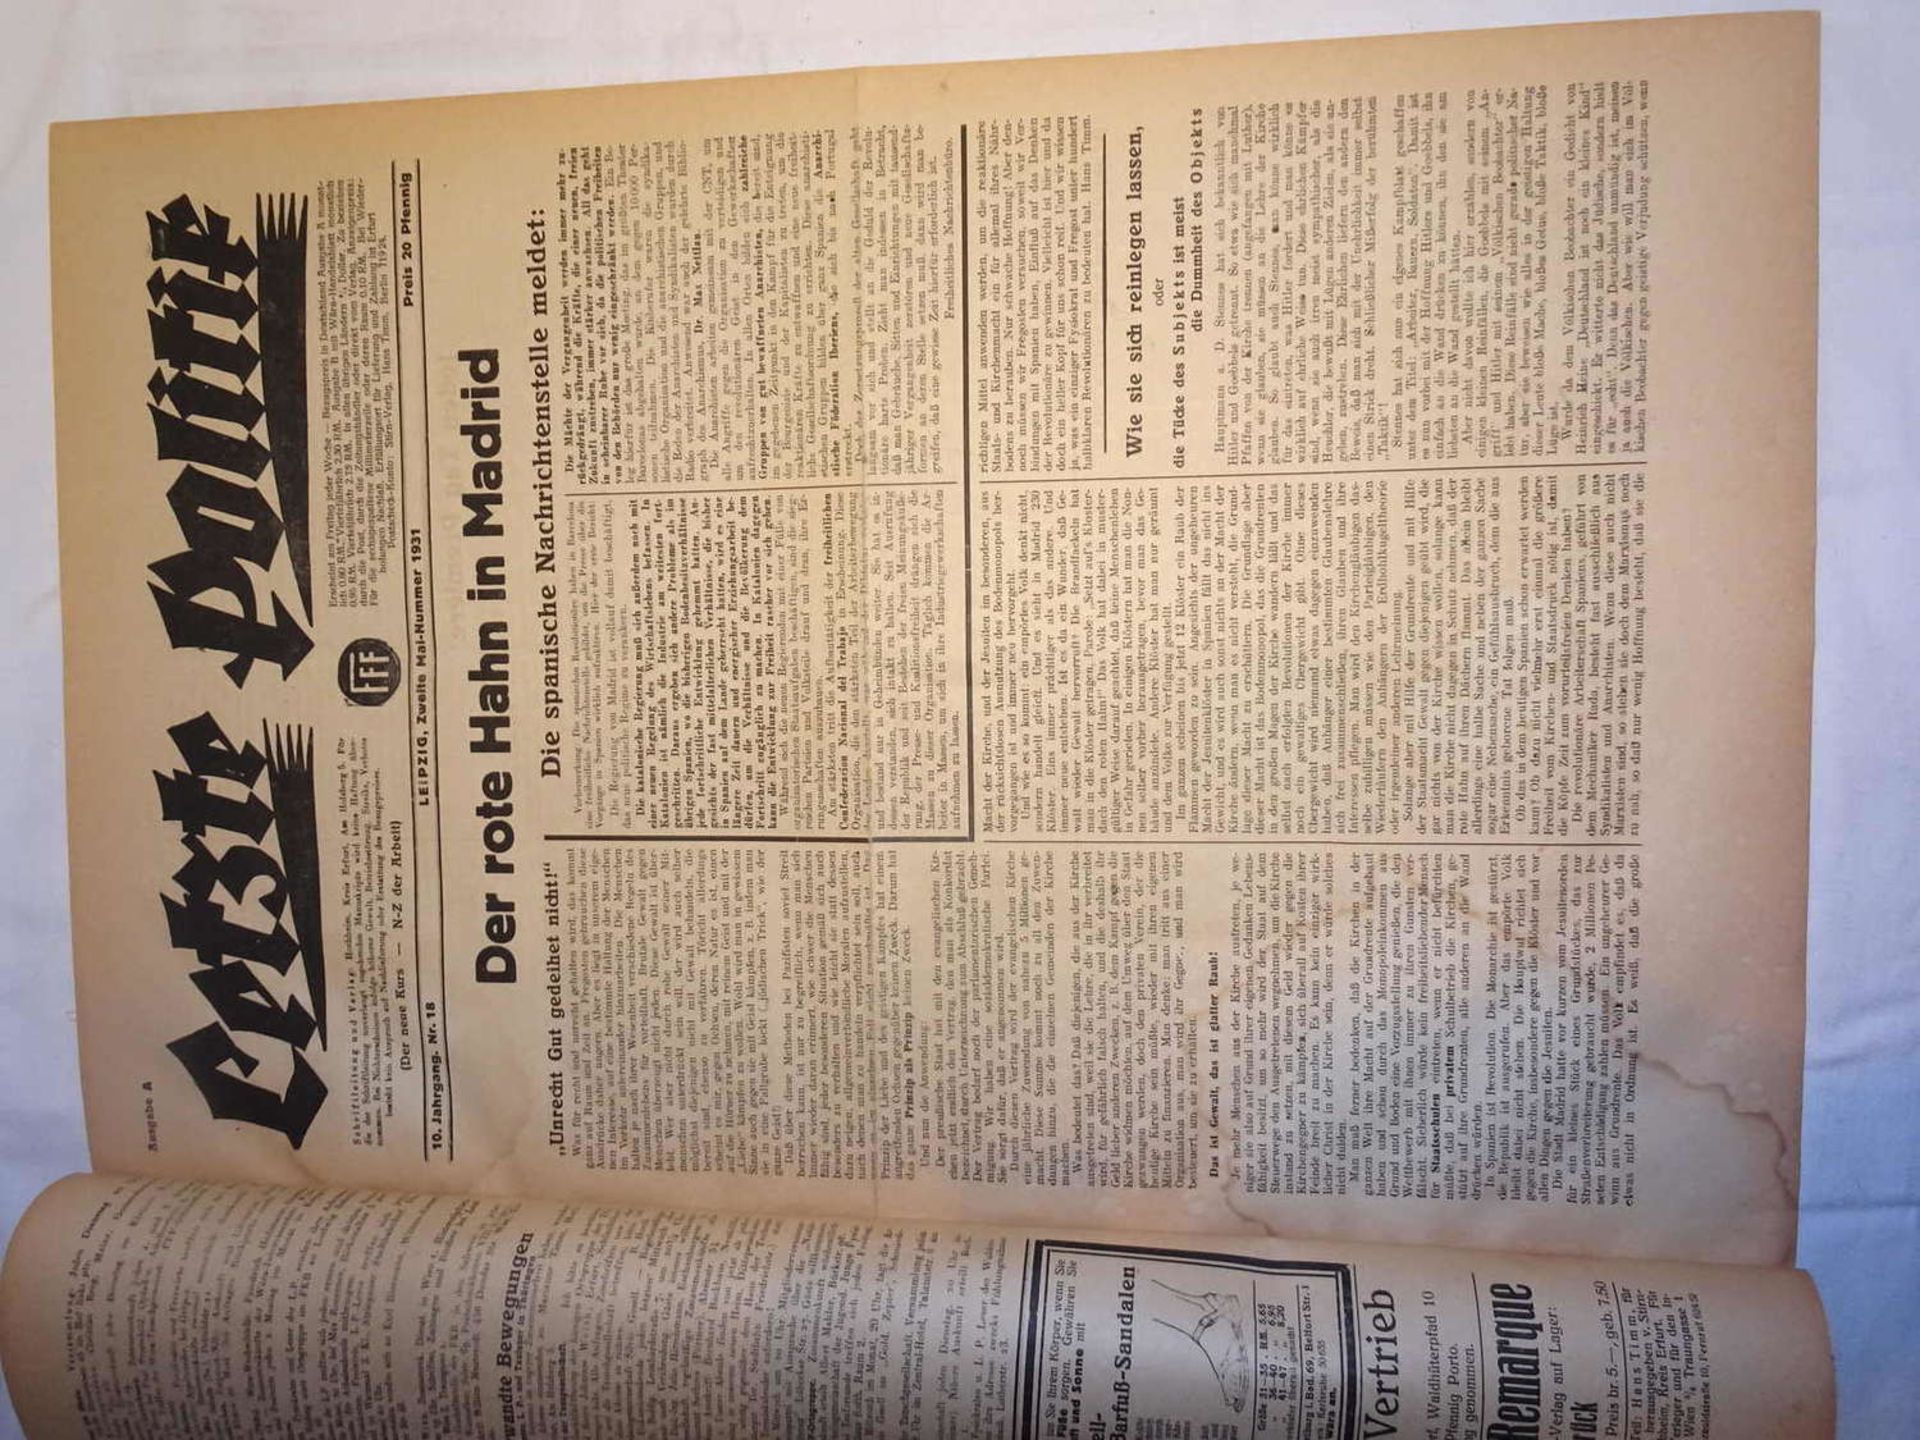 Zeitungslot "Letzte Politik", 10.Jahrgang, Nr.13, gebunden, 1931. Äußerst interessante Zeitungen.